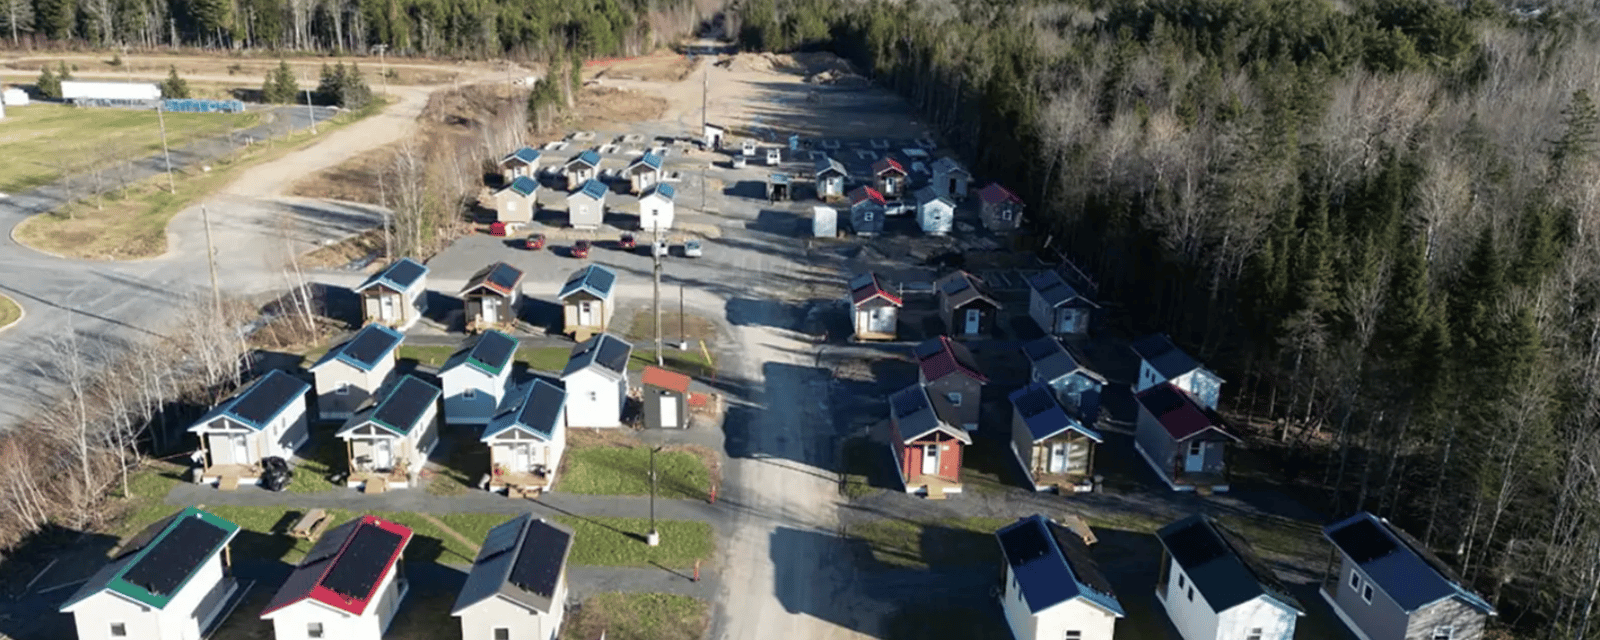 Un millionnaire fait construire 99 petites maisons pour venir en aide à la communauté.